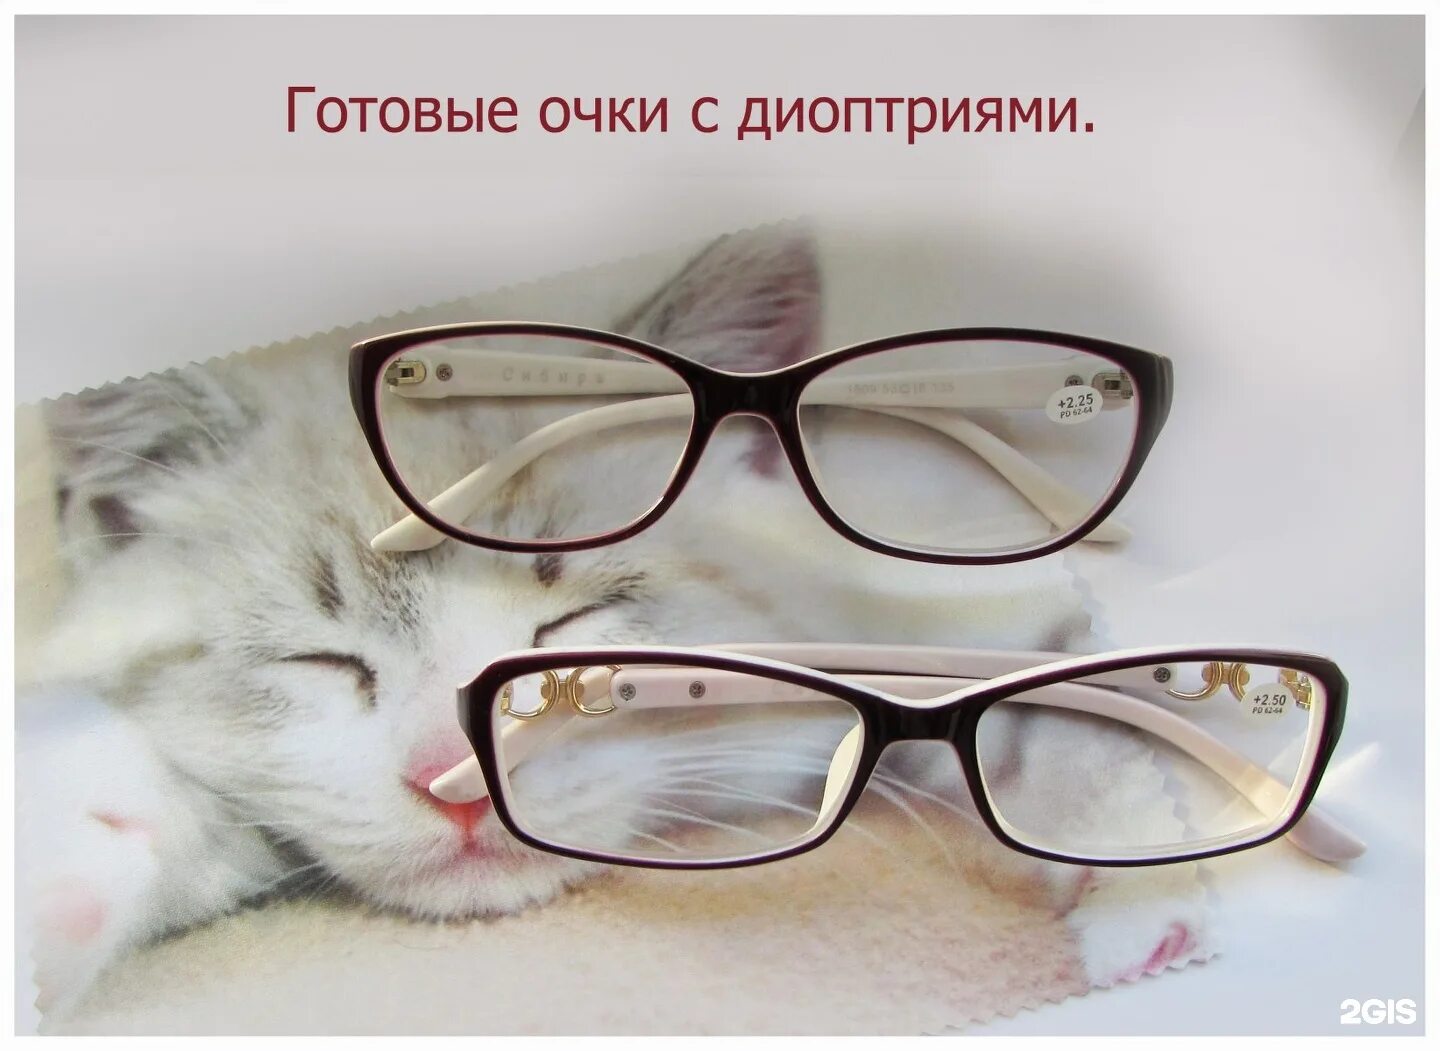 Можно сдать очки обратно. Реклама очков для зрения. Очки готовые. Реклама для оптики очки. Очки реклама баннер.